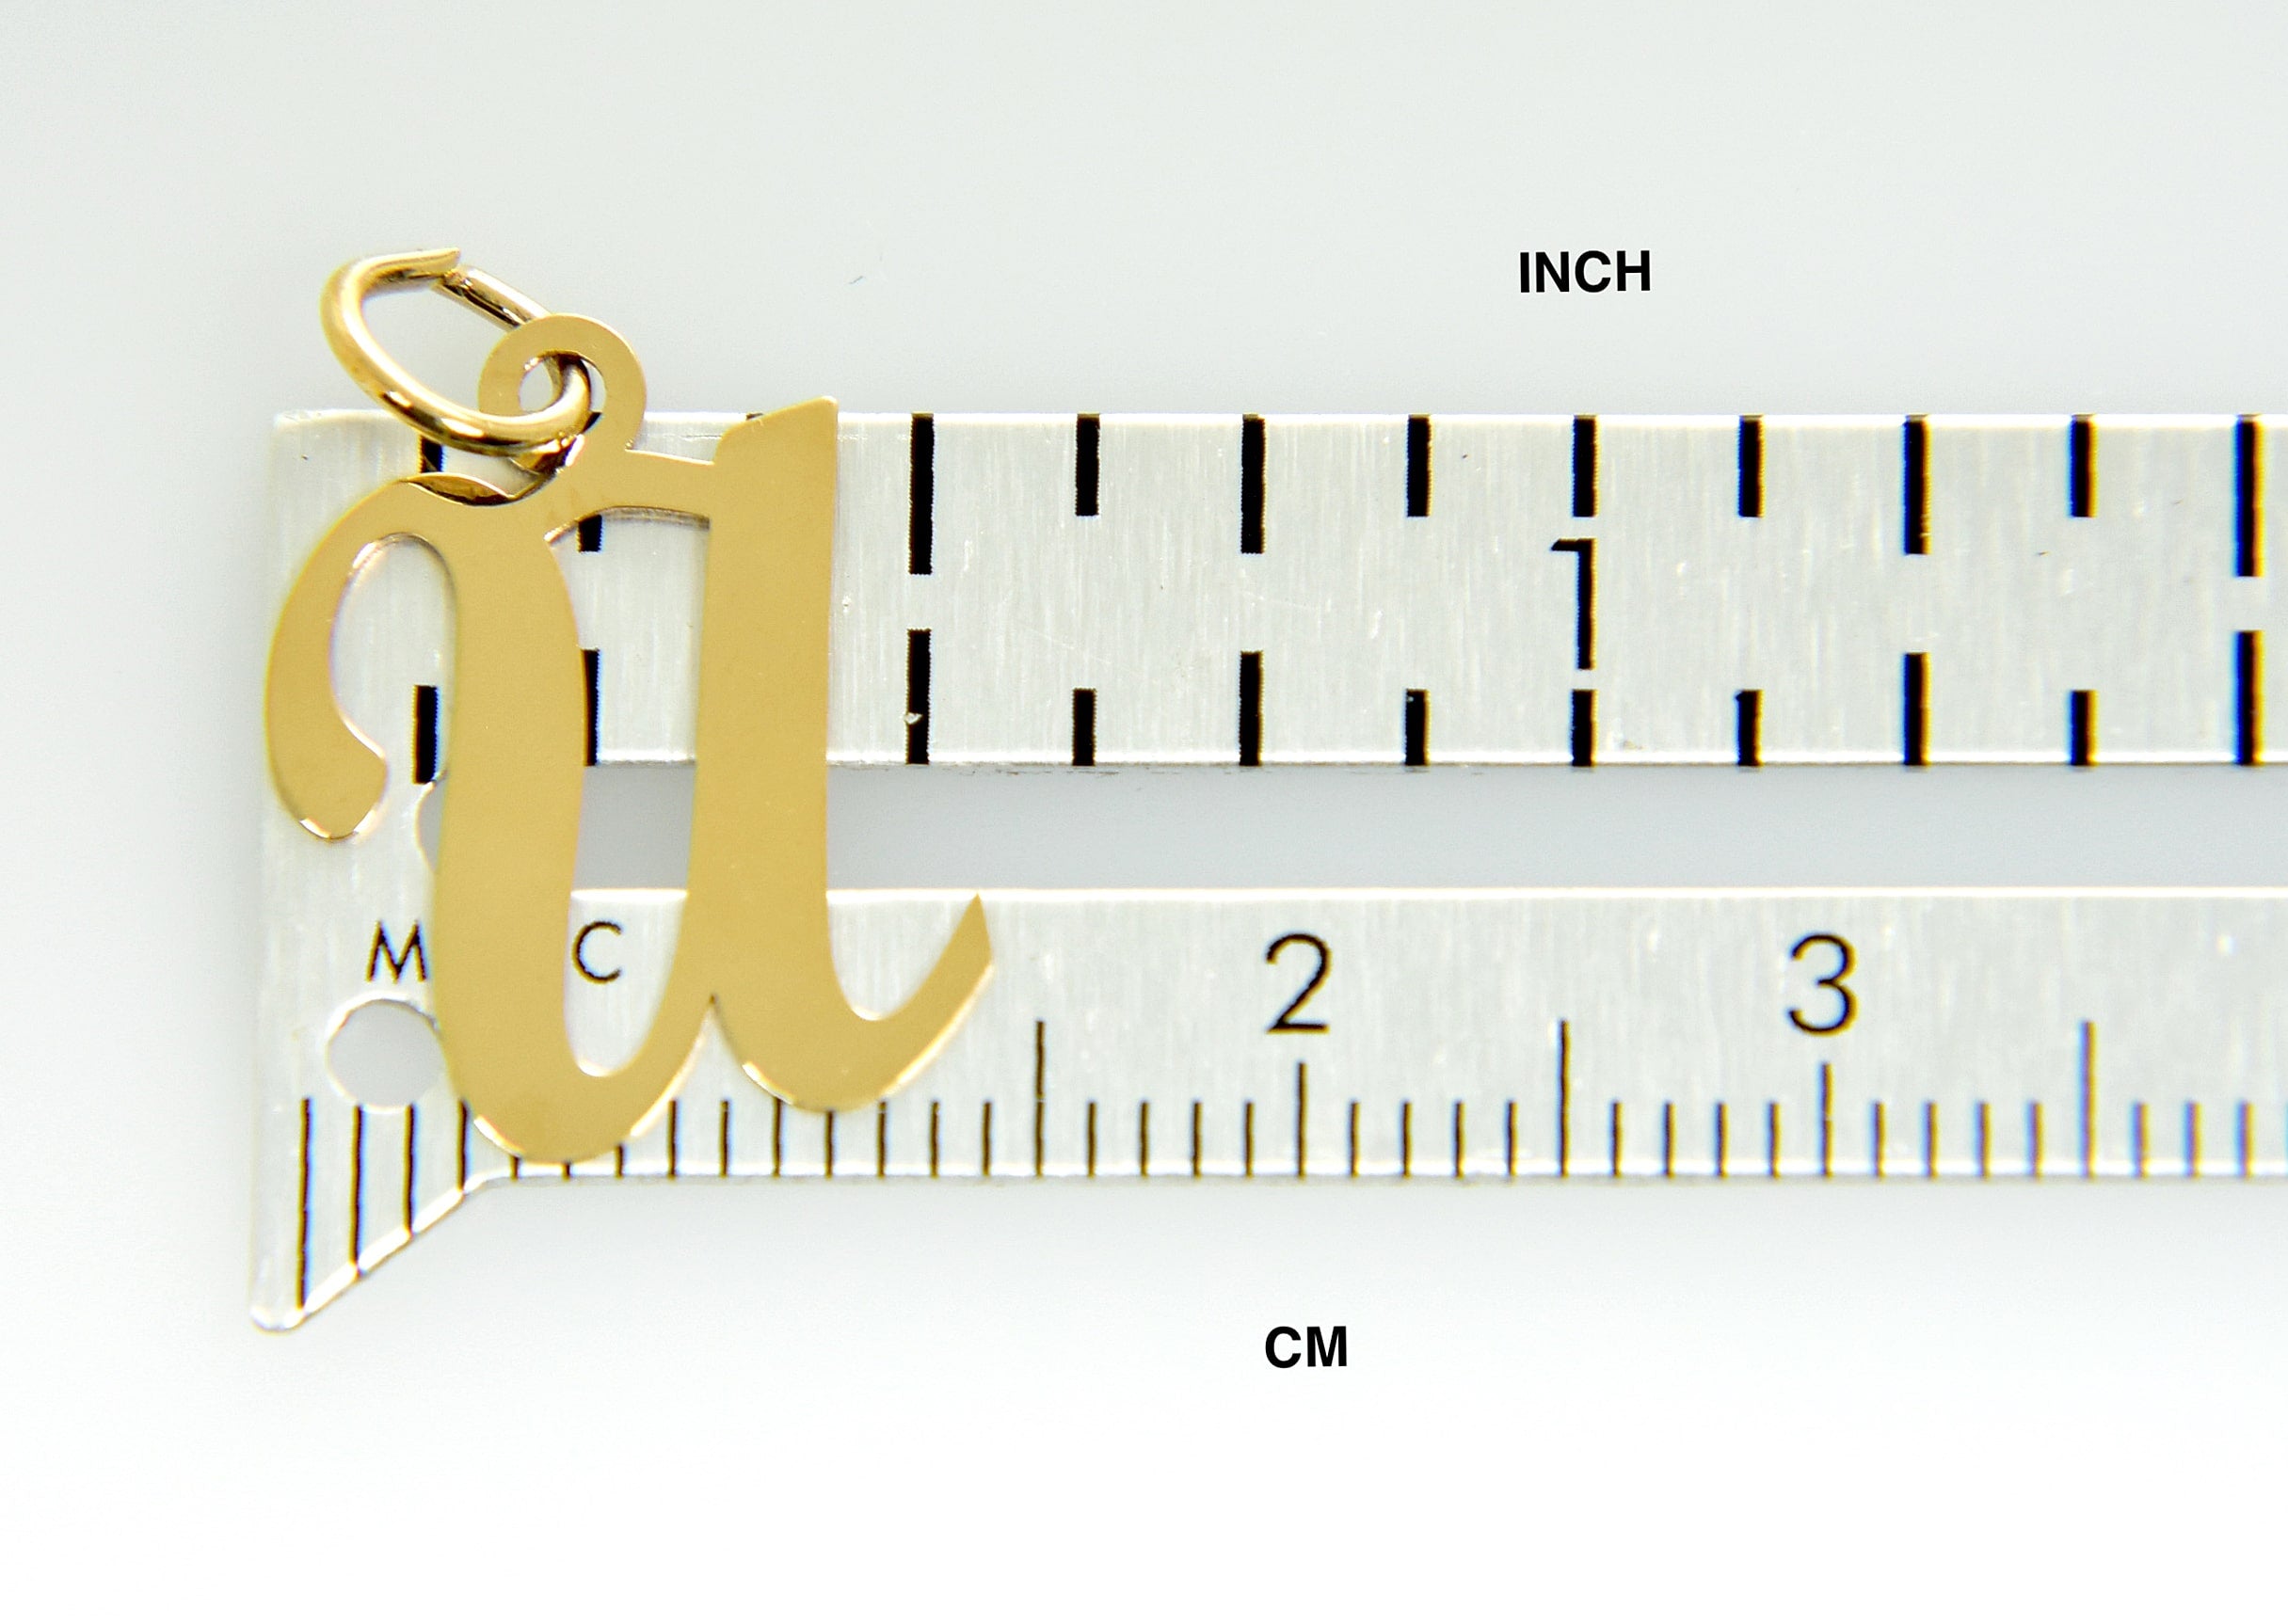 14K Yellow Gold Initial Letter U Cursive Script Alphabet Pendant Charm